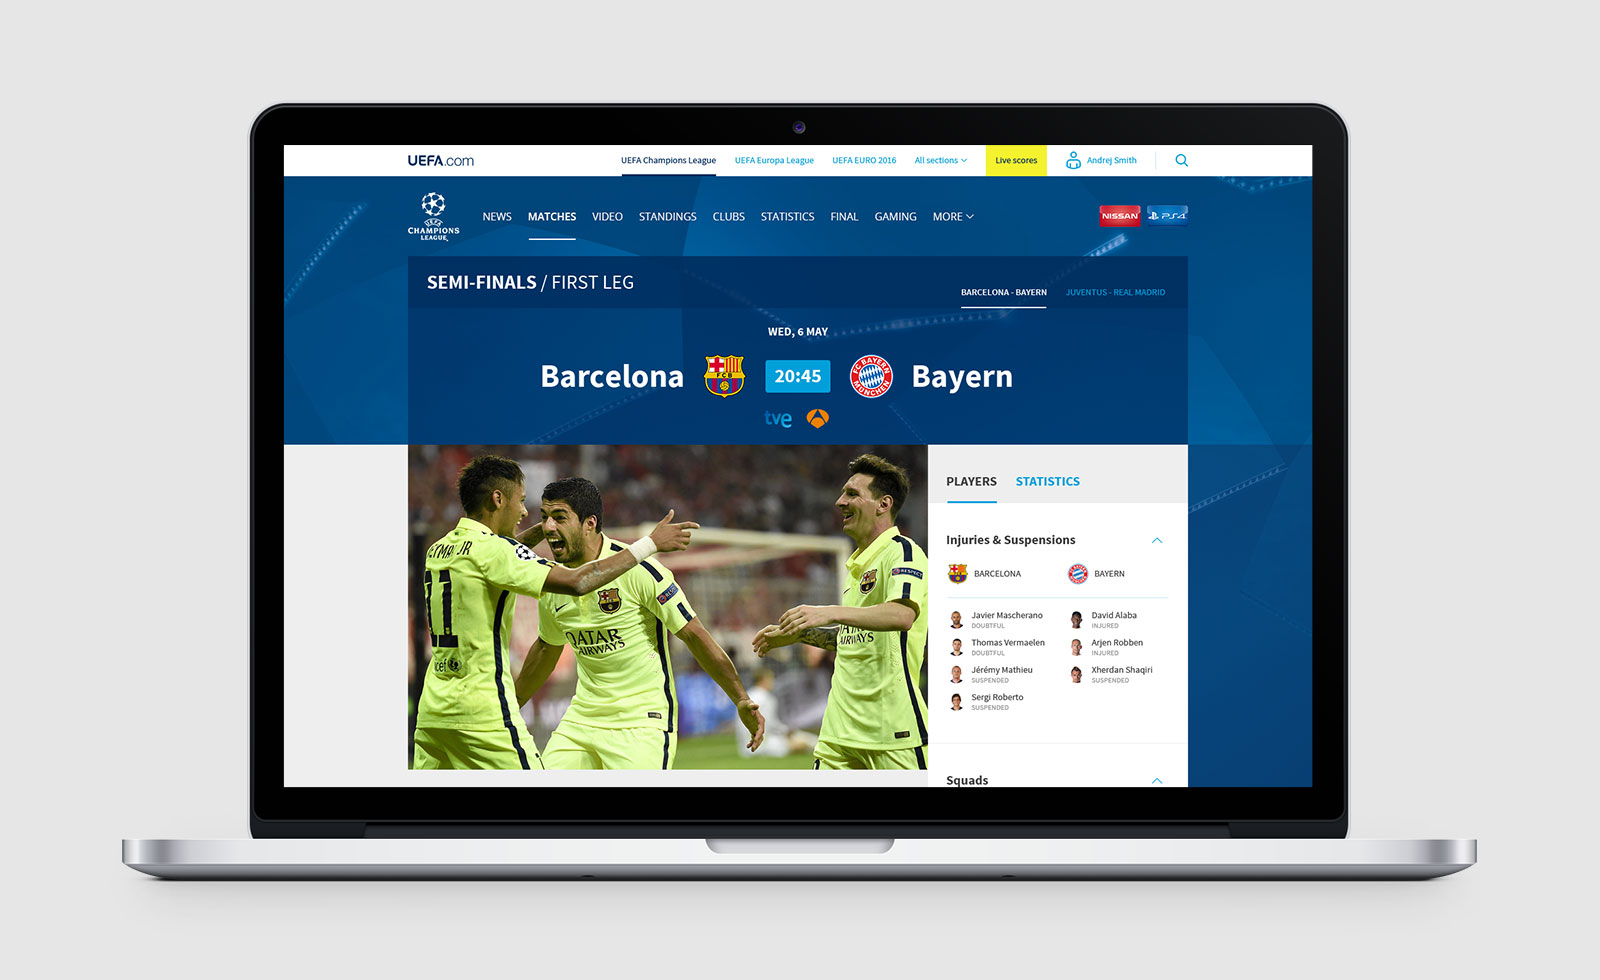 Página de pre partido de la web de la UEFA Champions League